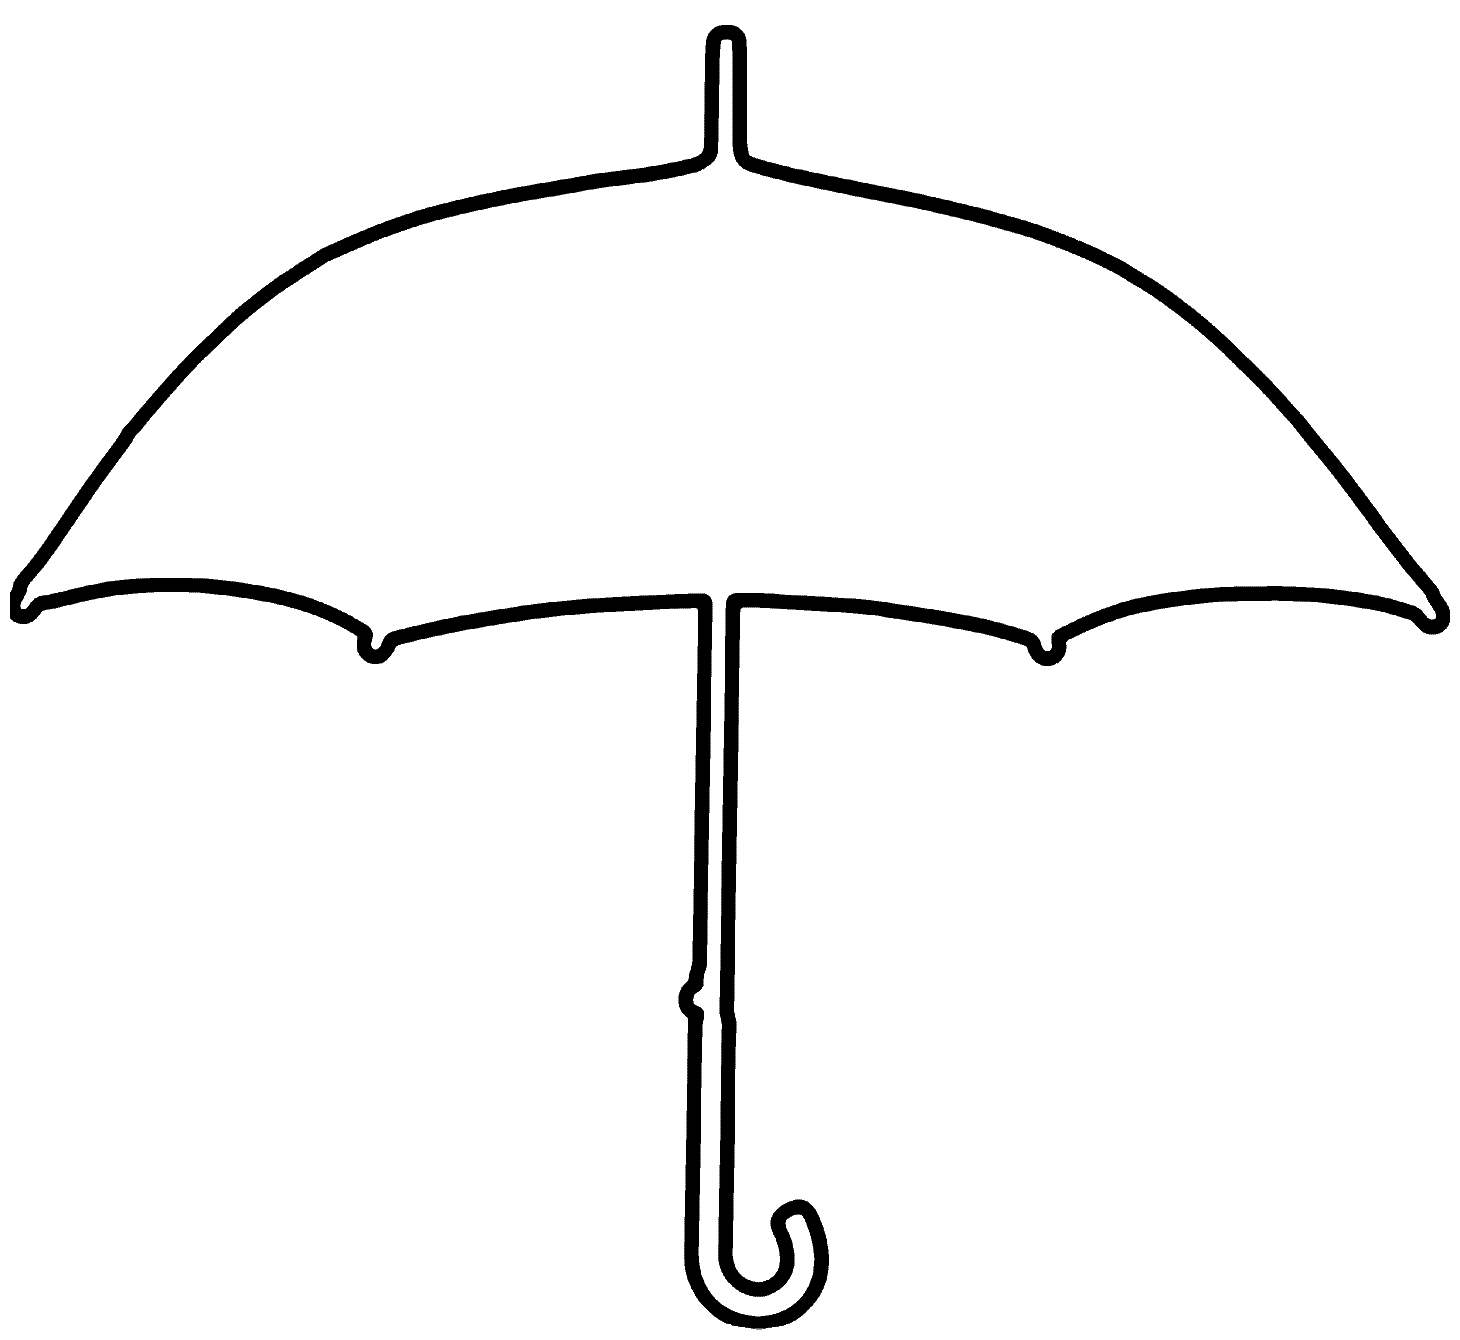 Black umbrella clipart